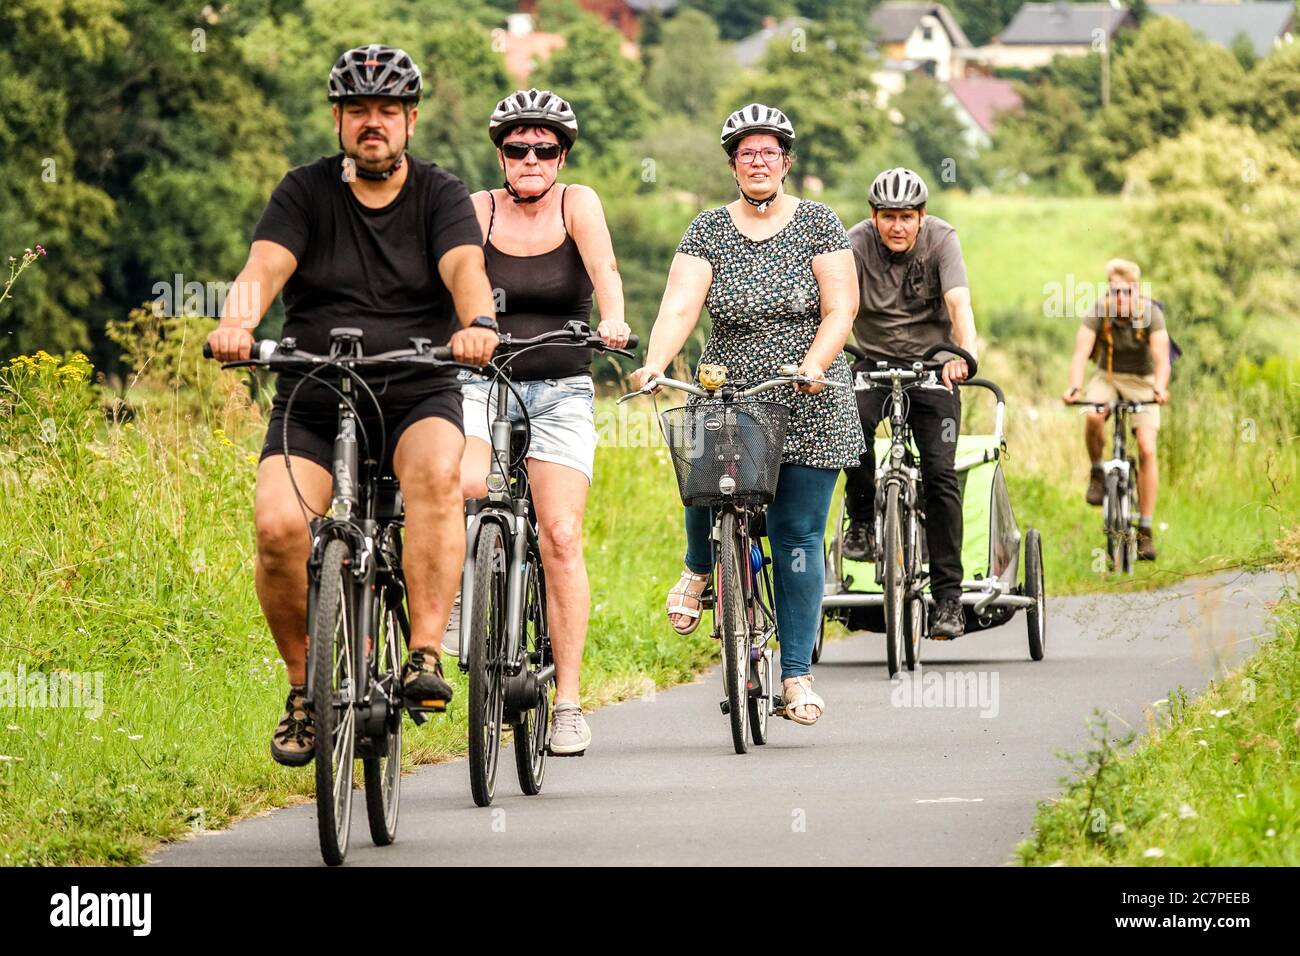 Gruppe von Senioren Menschen genießen Radfahren Sachsen Deutschland Urlaub Europäische Senioren, alte Menschen gesunde Lebensweise aktive Senioren Stockfoto